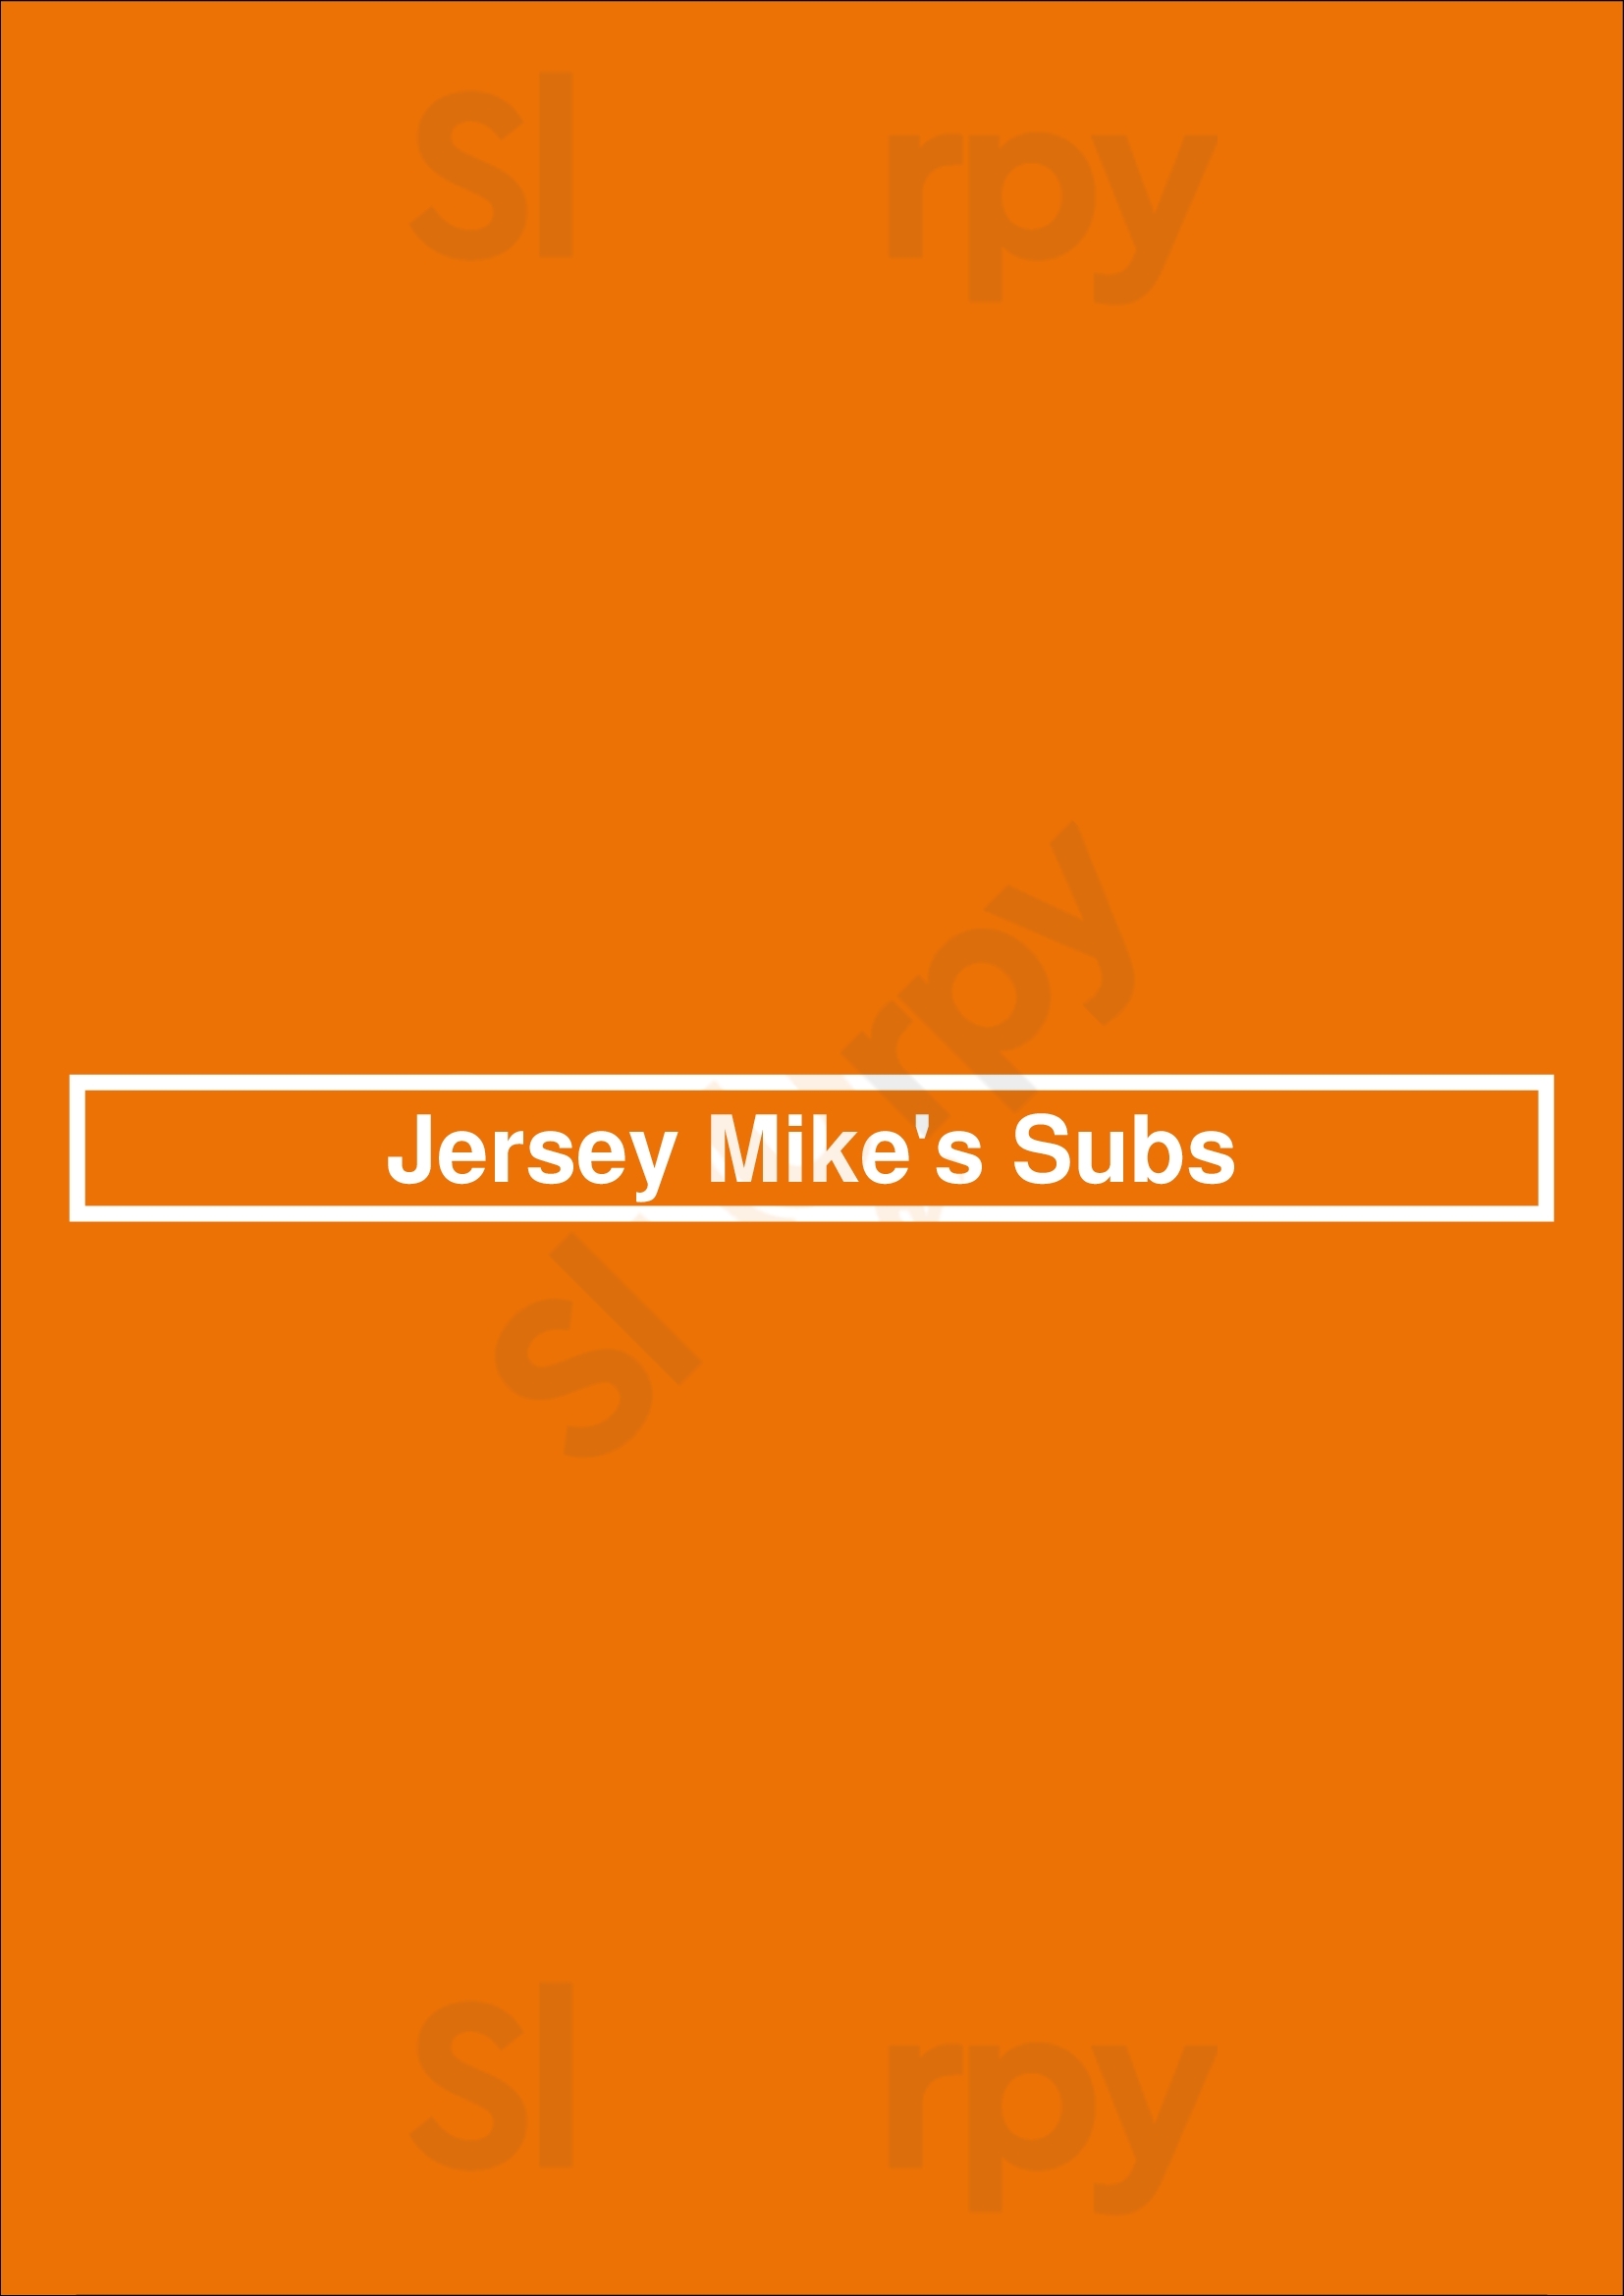 Jersey Mike's Subs Alexandria Menu - 1